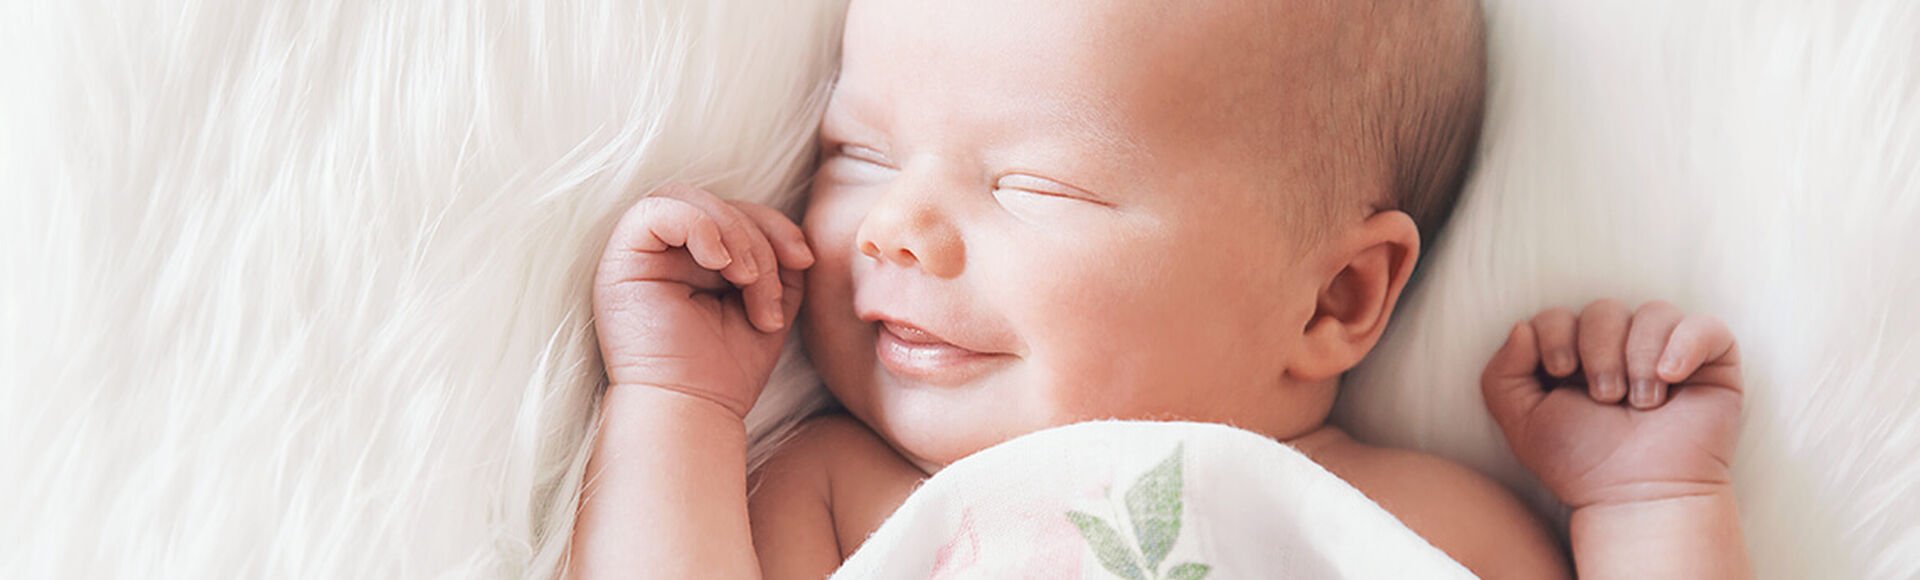 Fases y funciones del sueño en un bebé